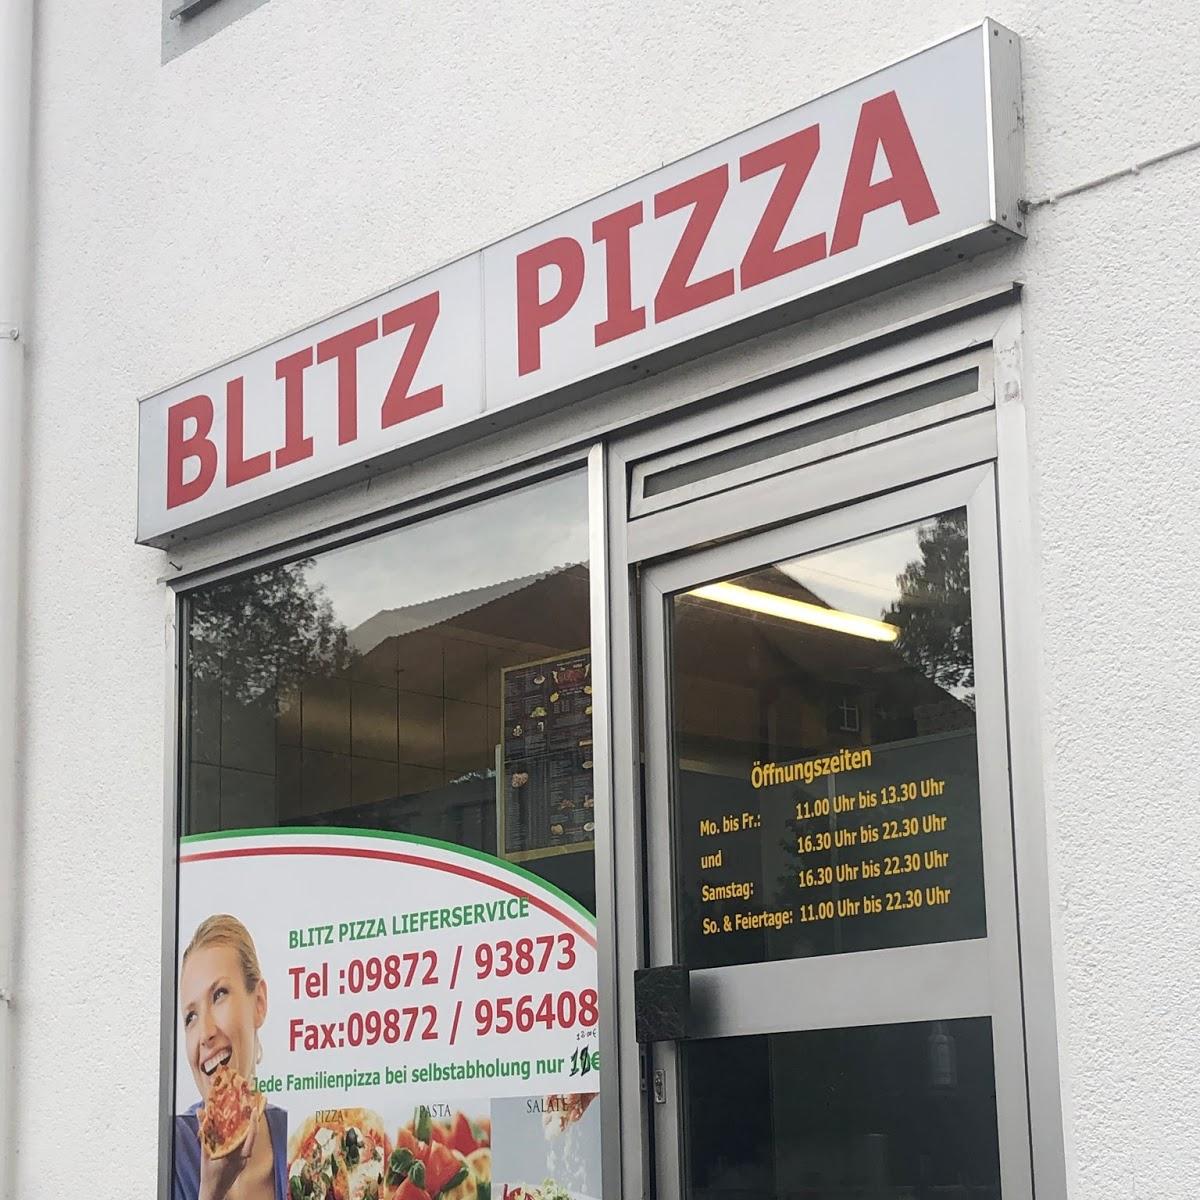 Der Neue Blitz Pizza Lieferservice